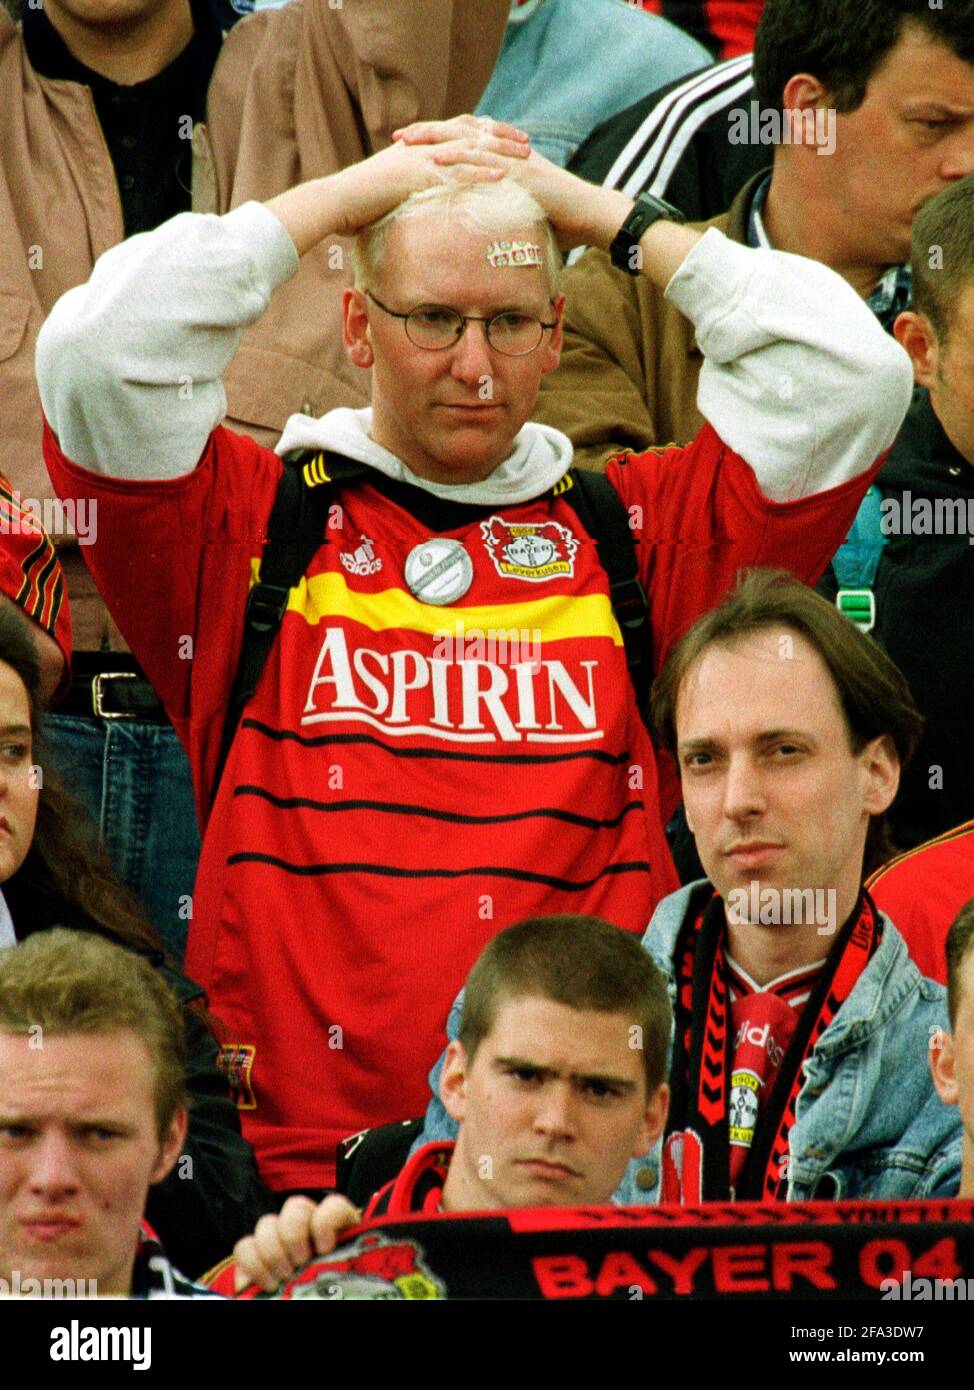 Unterhaching, Allemagne 20.5.2000, football: SPVVG Unterhaching vs Bayer 04 Leverkusen 2:0, Leverkusen rate le championnat en perdant le dernier match de la saison juste au sud de Munich, domicile du gagnant de saison Bayern - frustrés Leverkusen fans Banque D'Images